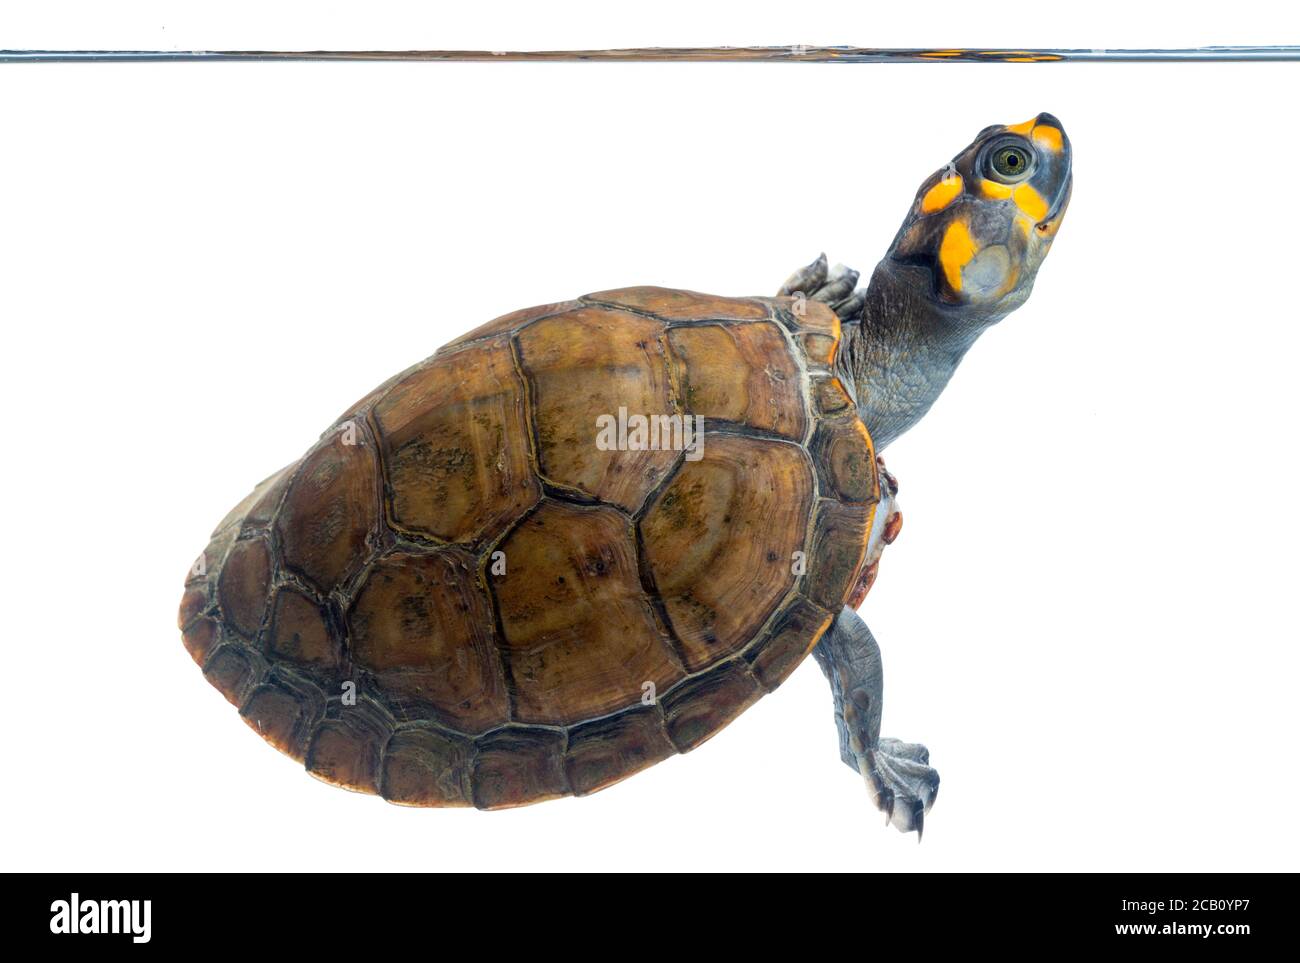 Die gelbgefleckte Amazonas-Flussschildkröte oder die gelbgefleckte Flussschildkröte (Podocnemis unifilis) ist eine der größten südamerikanischen Flussschildkröten. Stockfoto